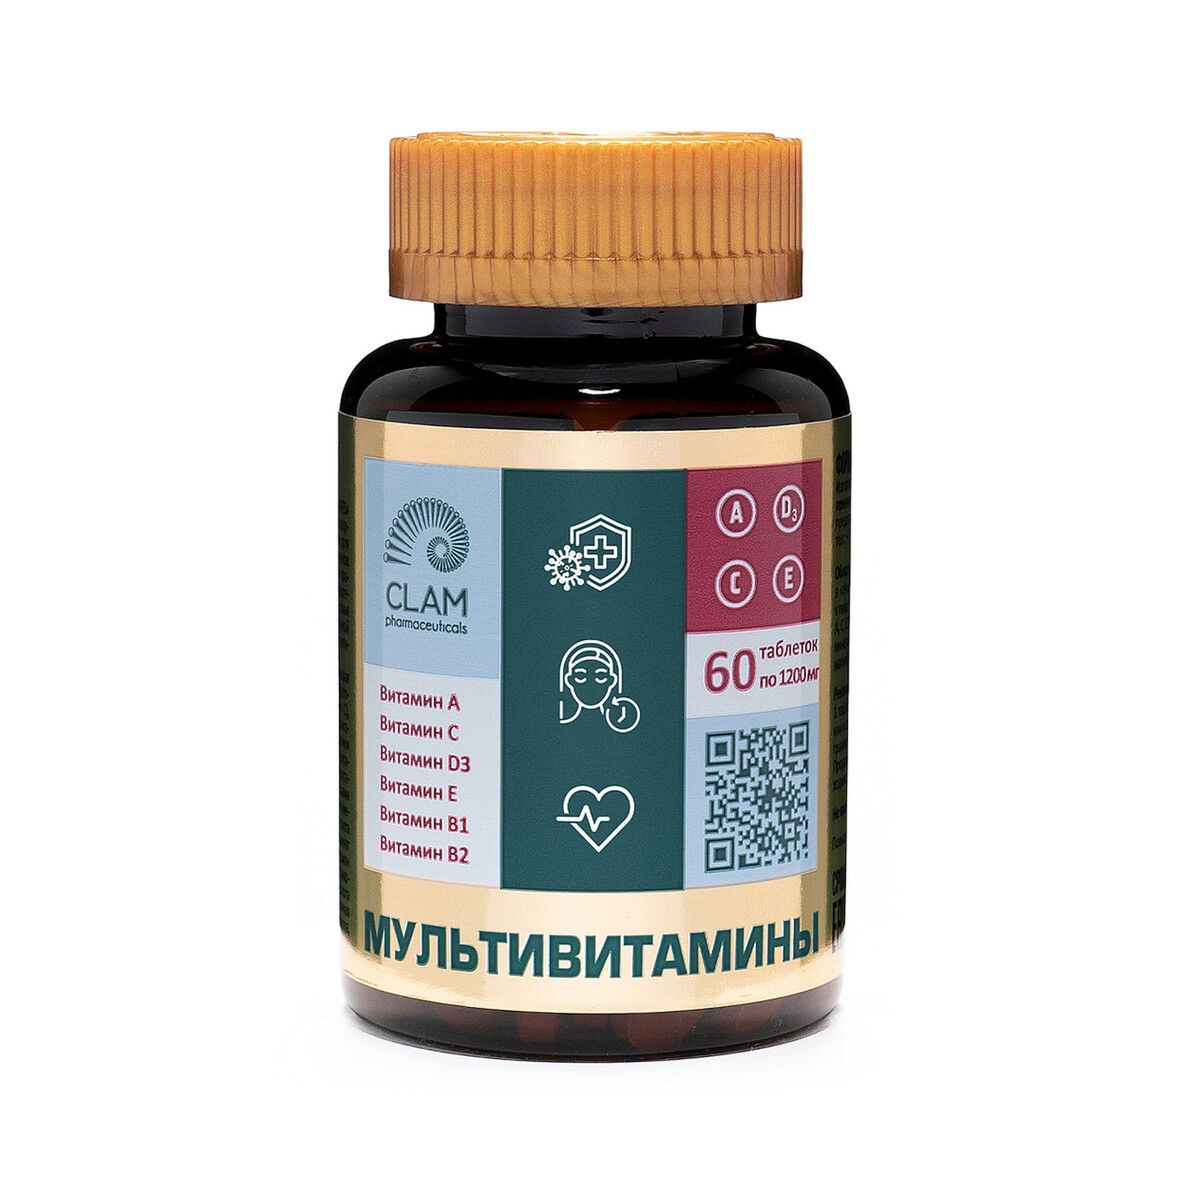 Мультивитамины - anti age, источник витаминов и минералов - комплекс для иммунитета, молодости и красоты - 60 капсул липосомал куркумин мультивитамин эксперт 12 витаминов веган 60 капсул